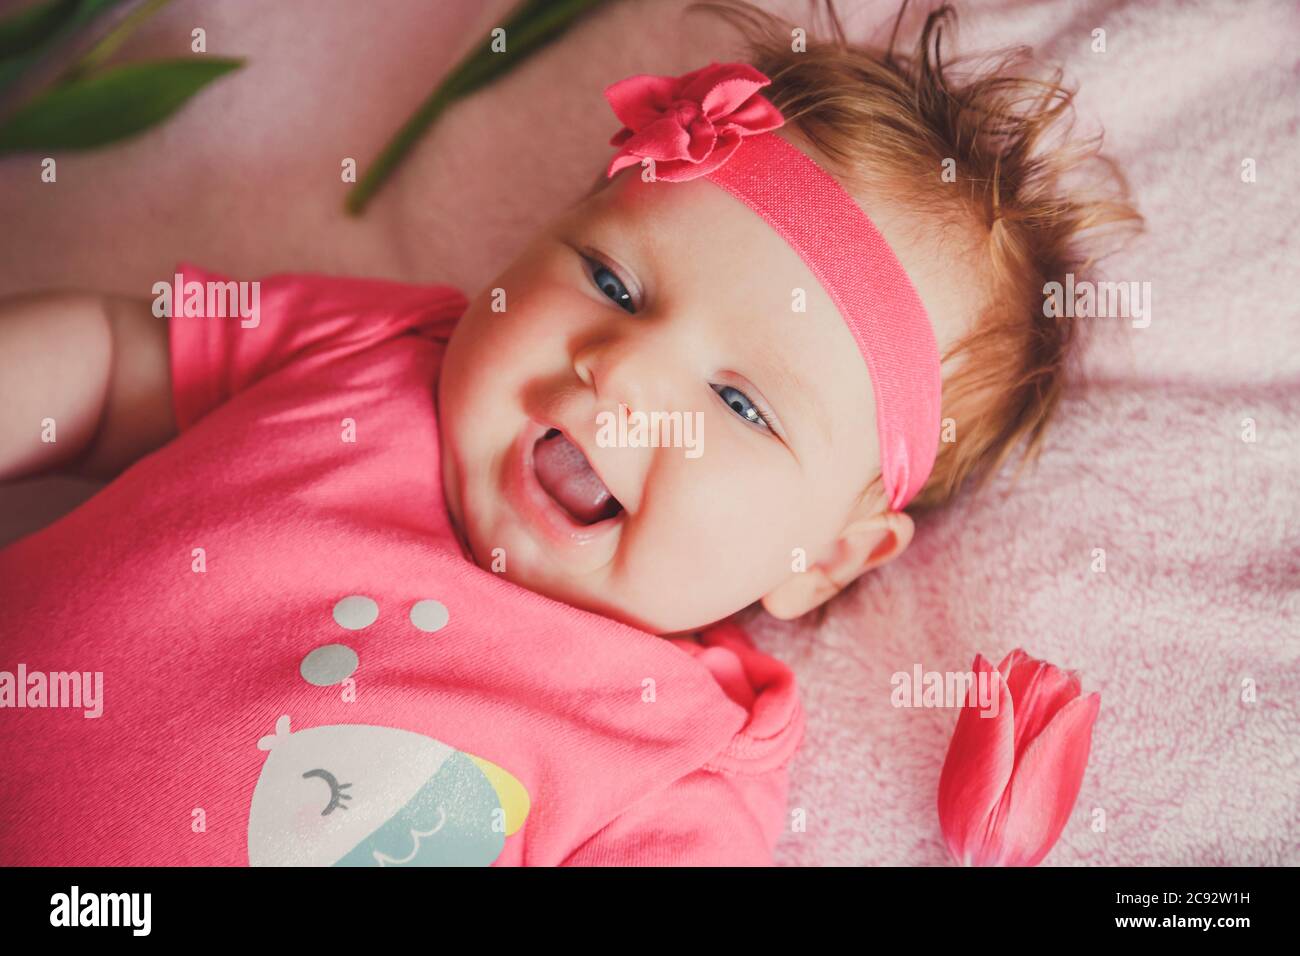 Primo piano ritratto di simpatica ragazza sorridente felice sdraiata sul letto rosa con tulipani intorno. Foto Stock